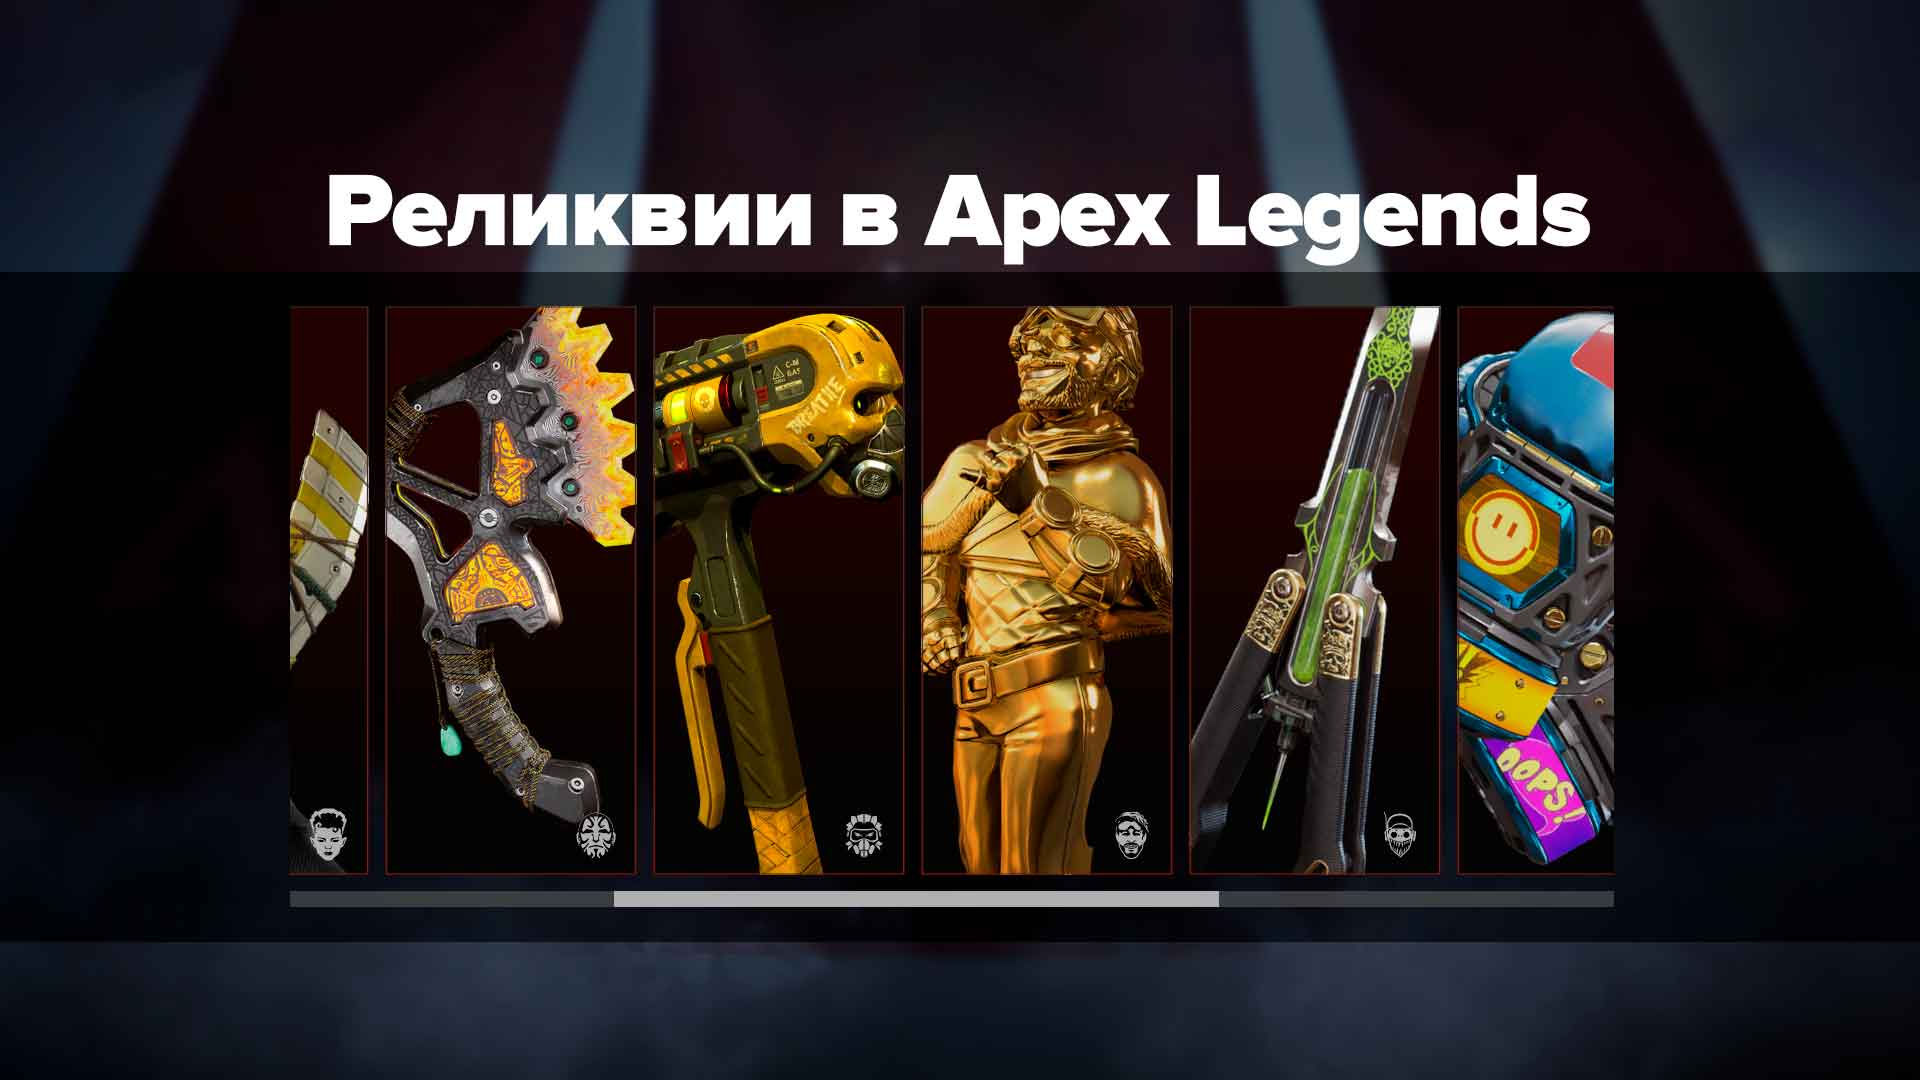 Реликвии в Apex Legends — очень редкие предметы, являющиеся оружием ближнего боя. В этом гайде подробно описано как их получить